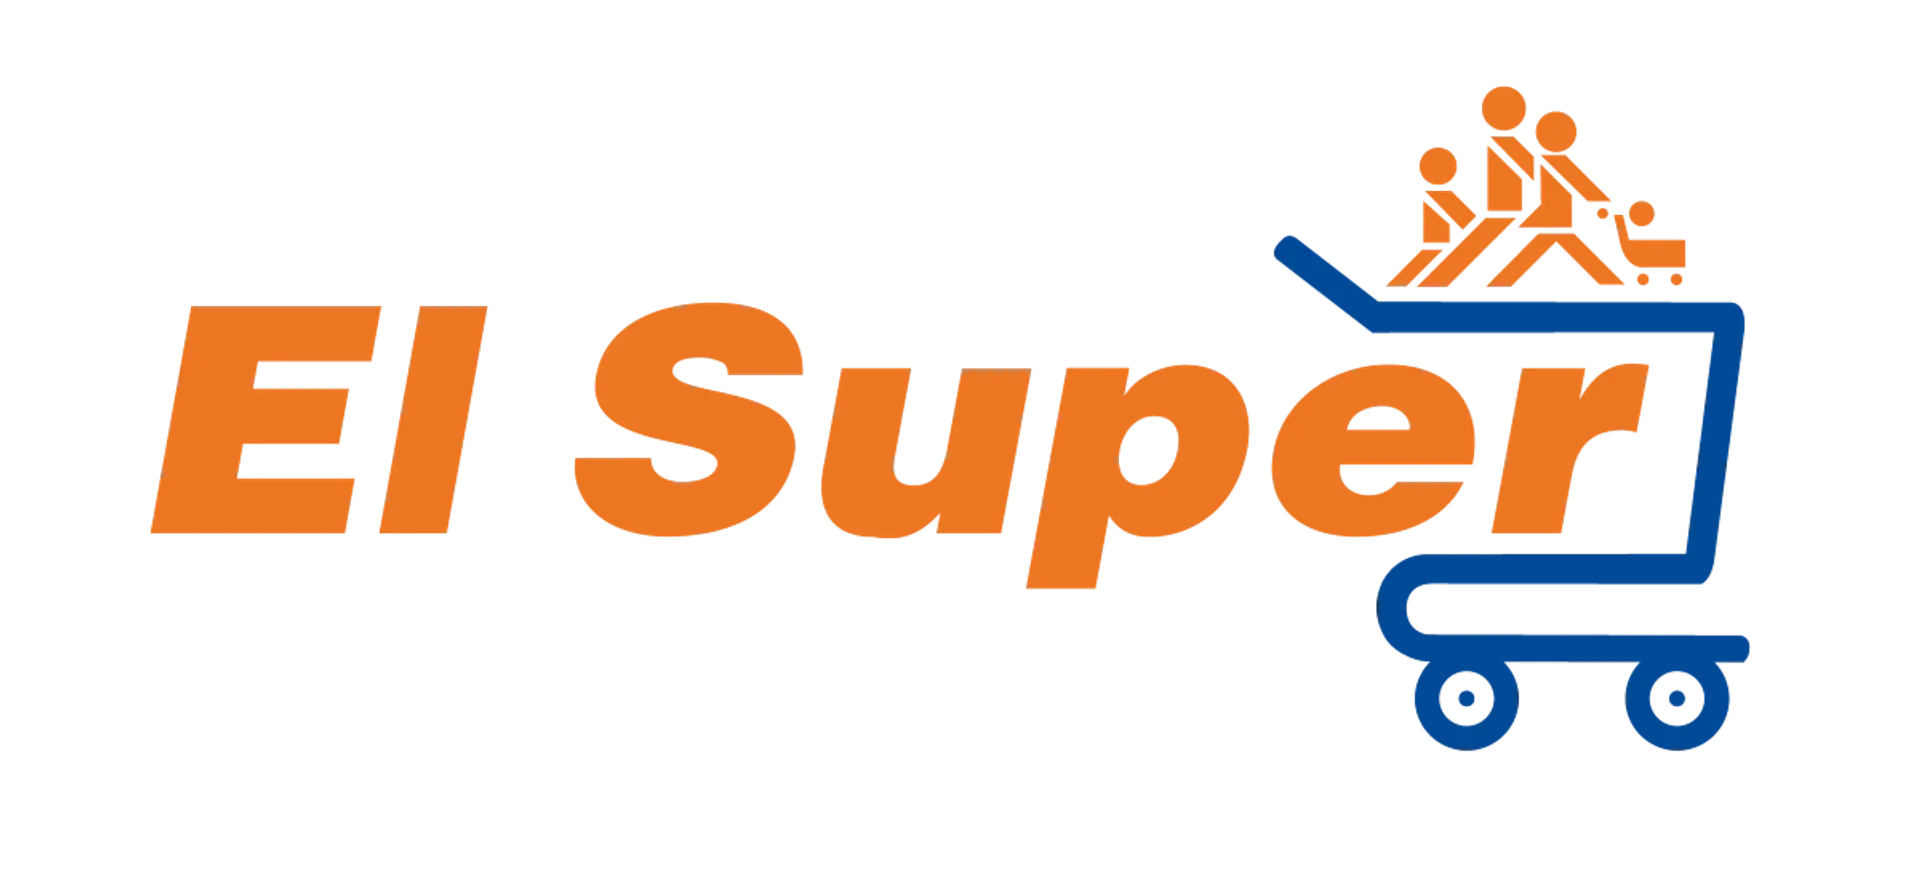 EL SUPER logo. Current weekly ad